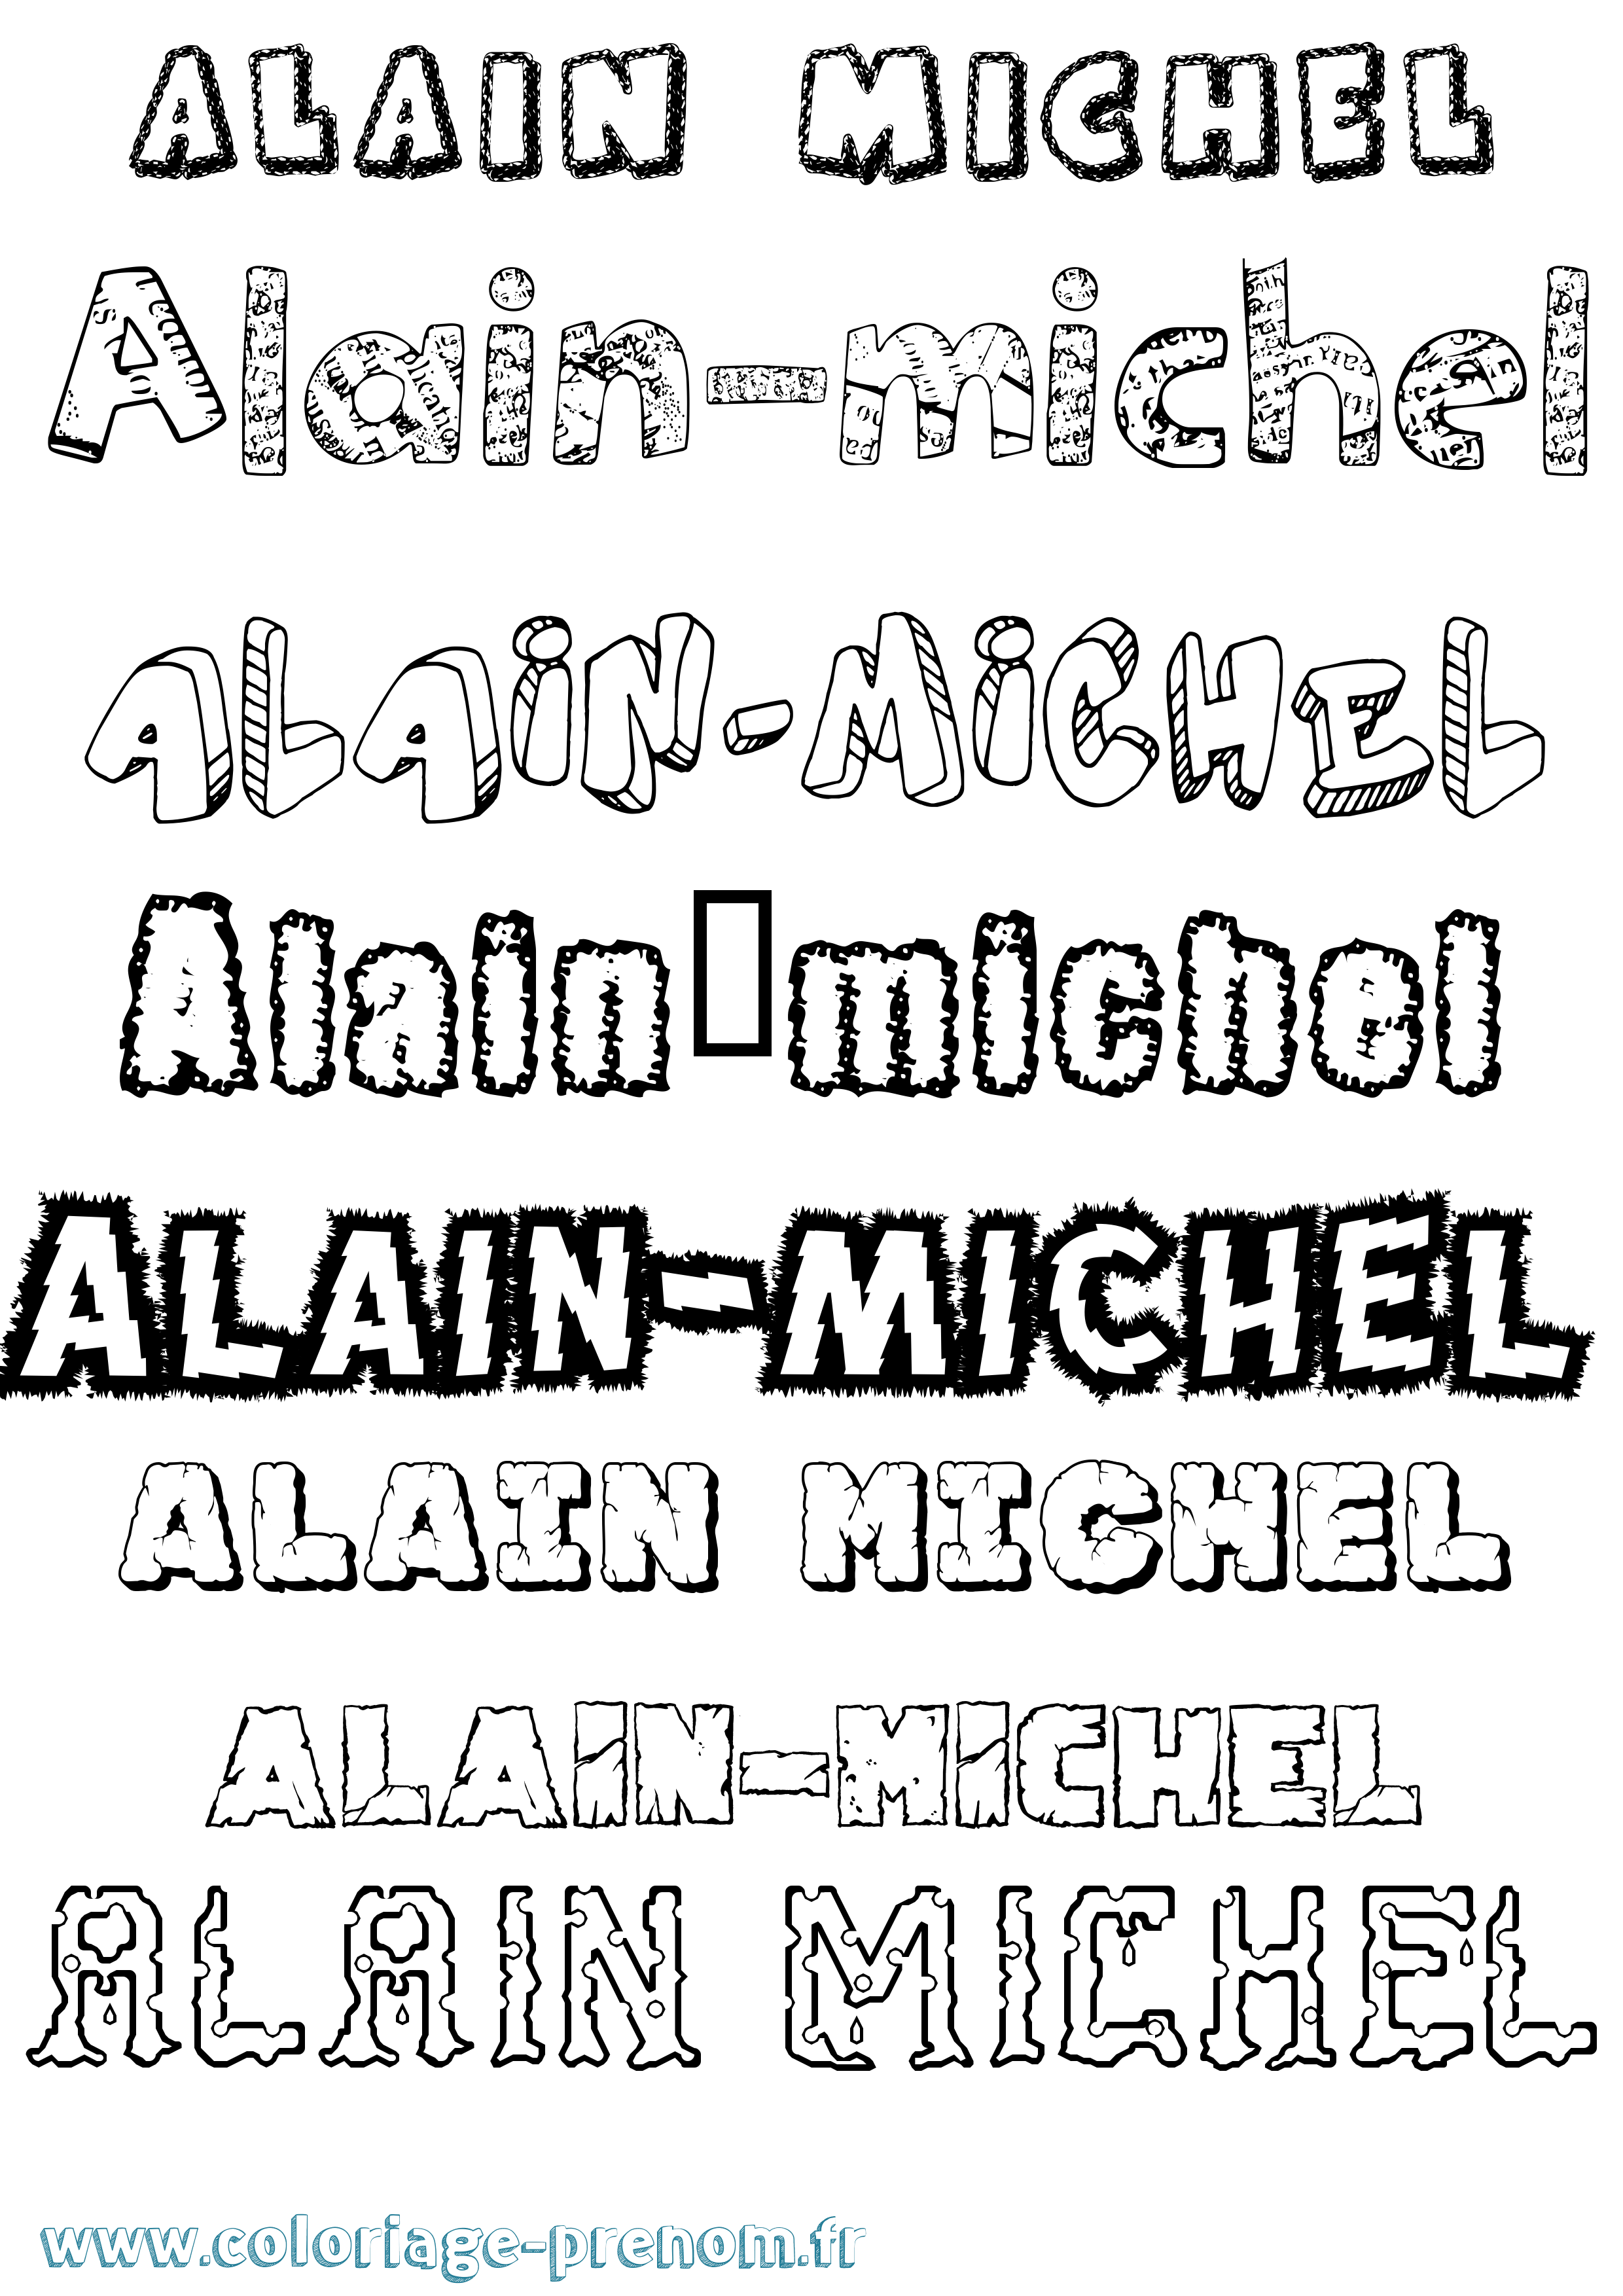 Coloriage prénom Alain-Michel Destructuré